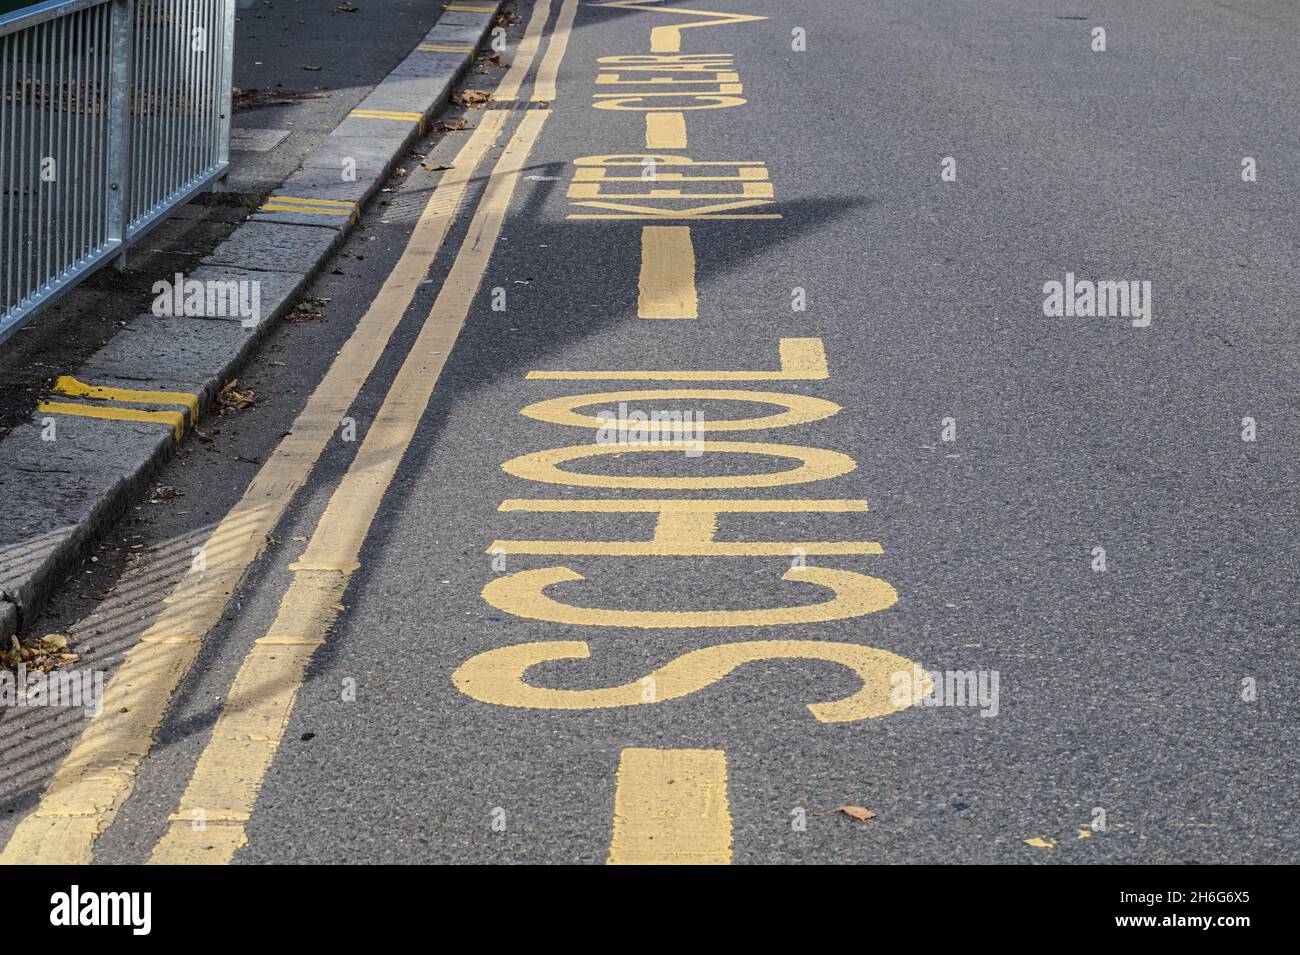 École Gardez des marques claires sur la rue pour garder l'espace hors des écoles libres des véhicules garés, Londres Angleterre Royaume-Uni Banque D'Images